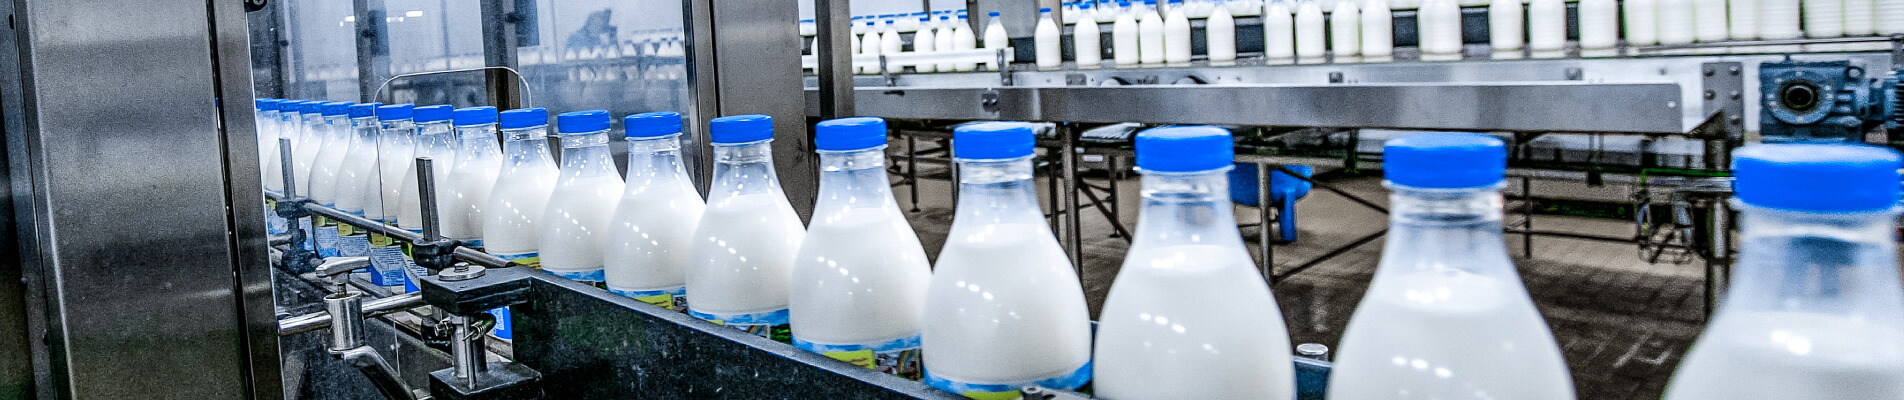 Industria lattiero casearia: come e perché ridurre le emissioni di CO2